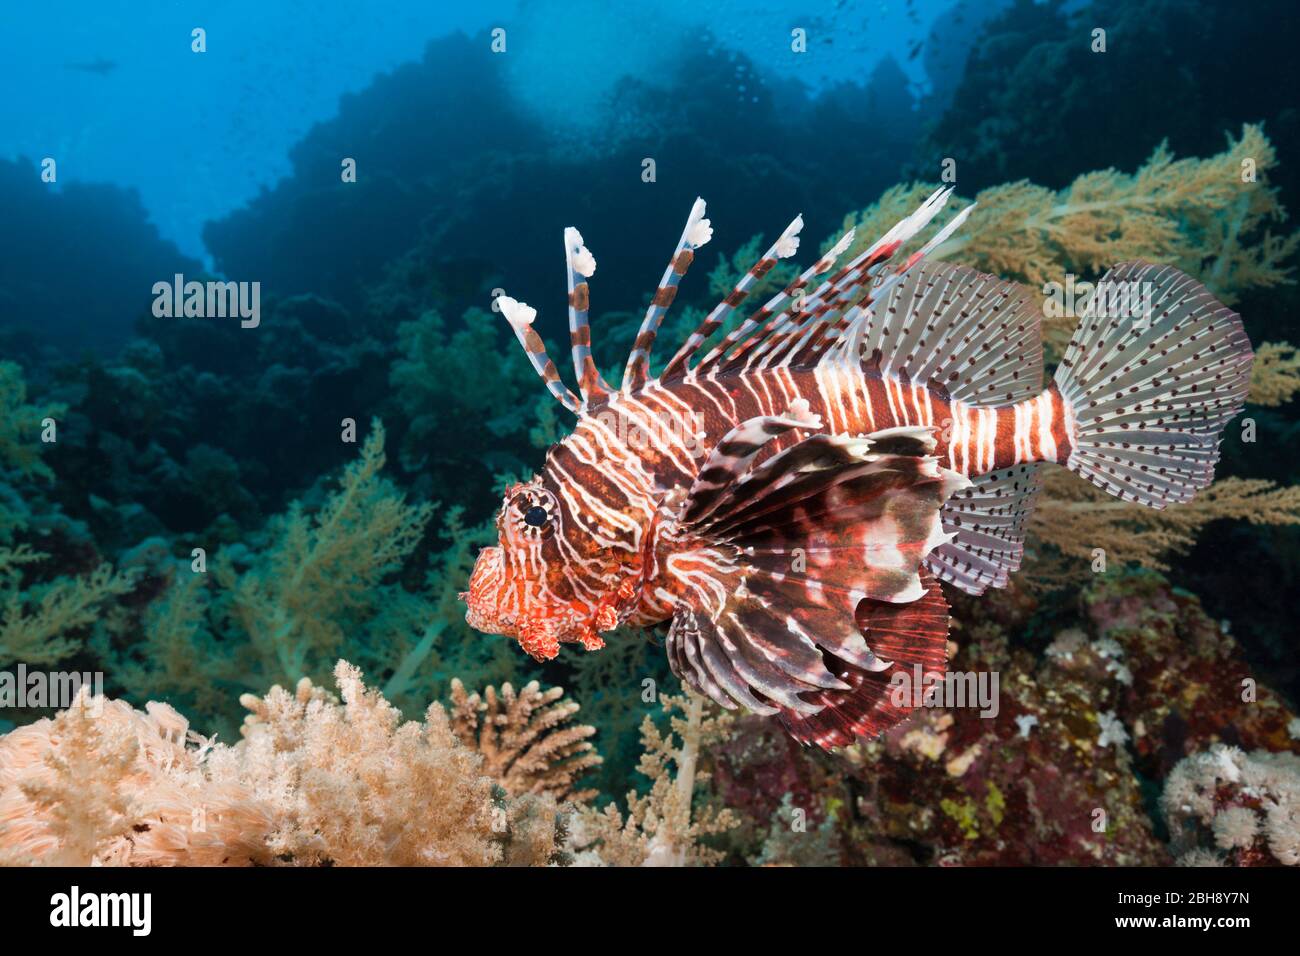 Indischer Rotfeuerfisch, Pterois Miles, Brother Islands, Rotes Meer, Ägypten Stockfoto